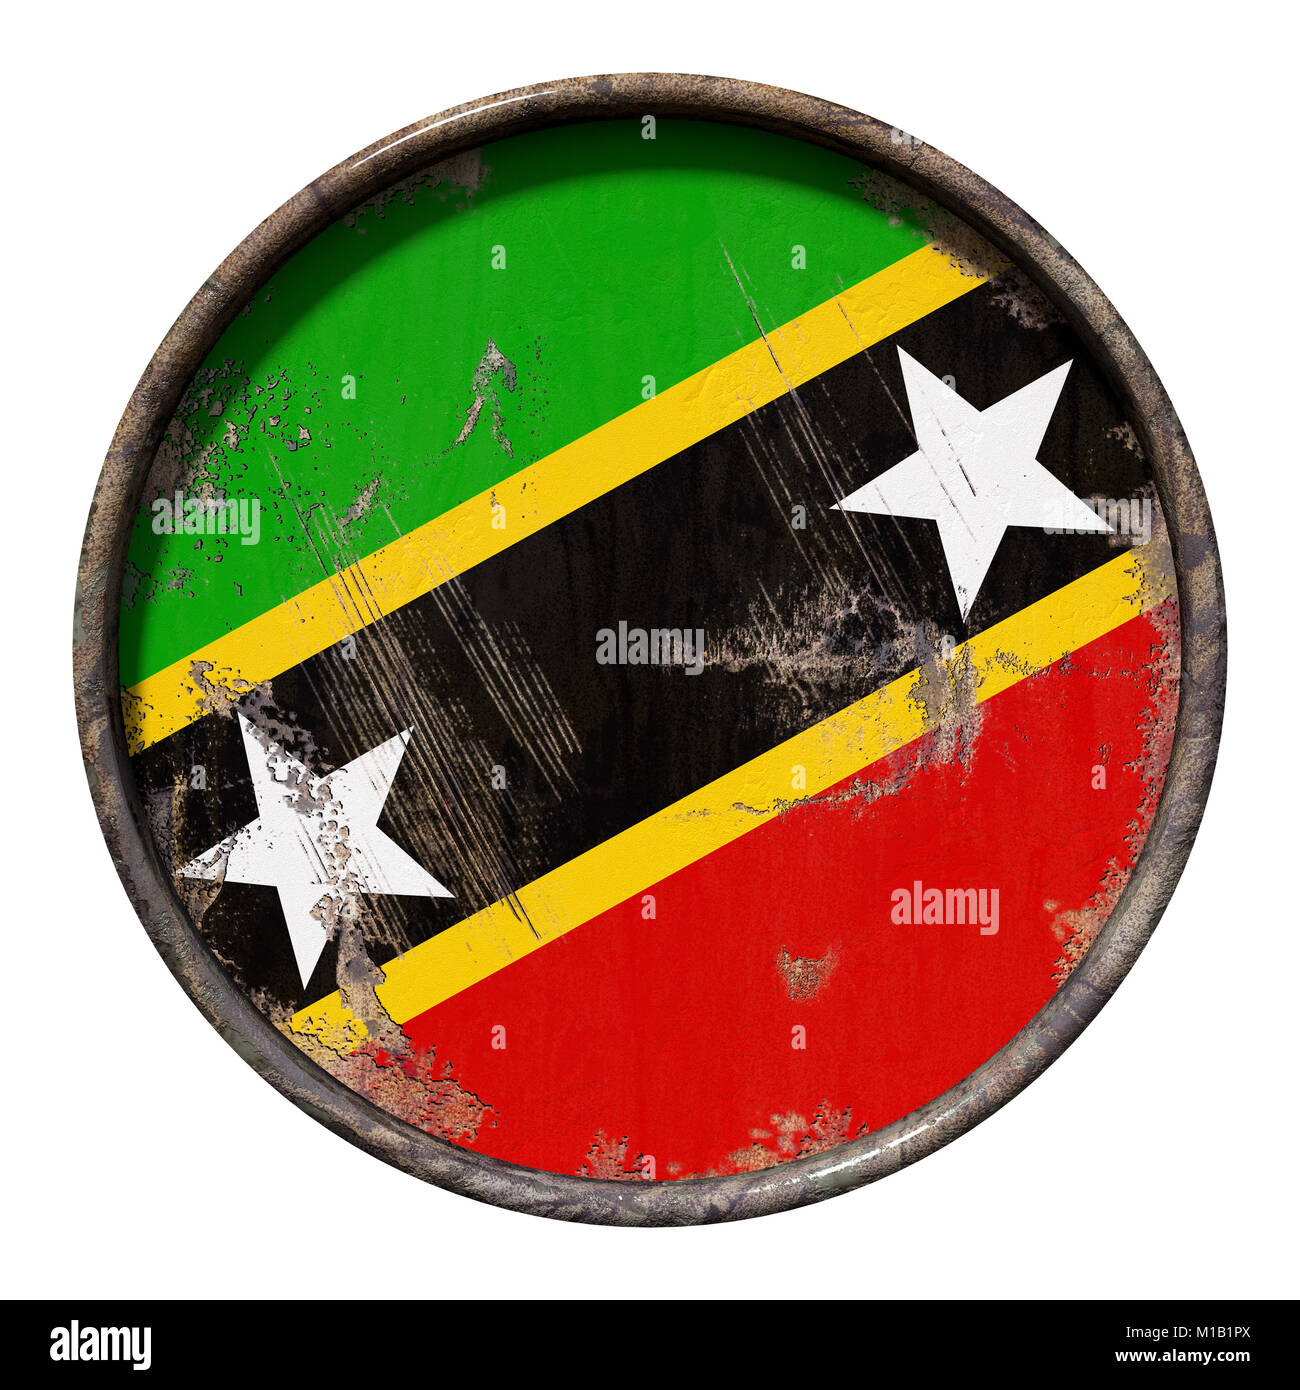 3D-Rendering für eine Saint Christopher und Nevis Flagge über eine rostige Metallplatte. Auf weissem Hintergrund. Stockfoto